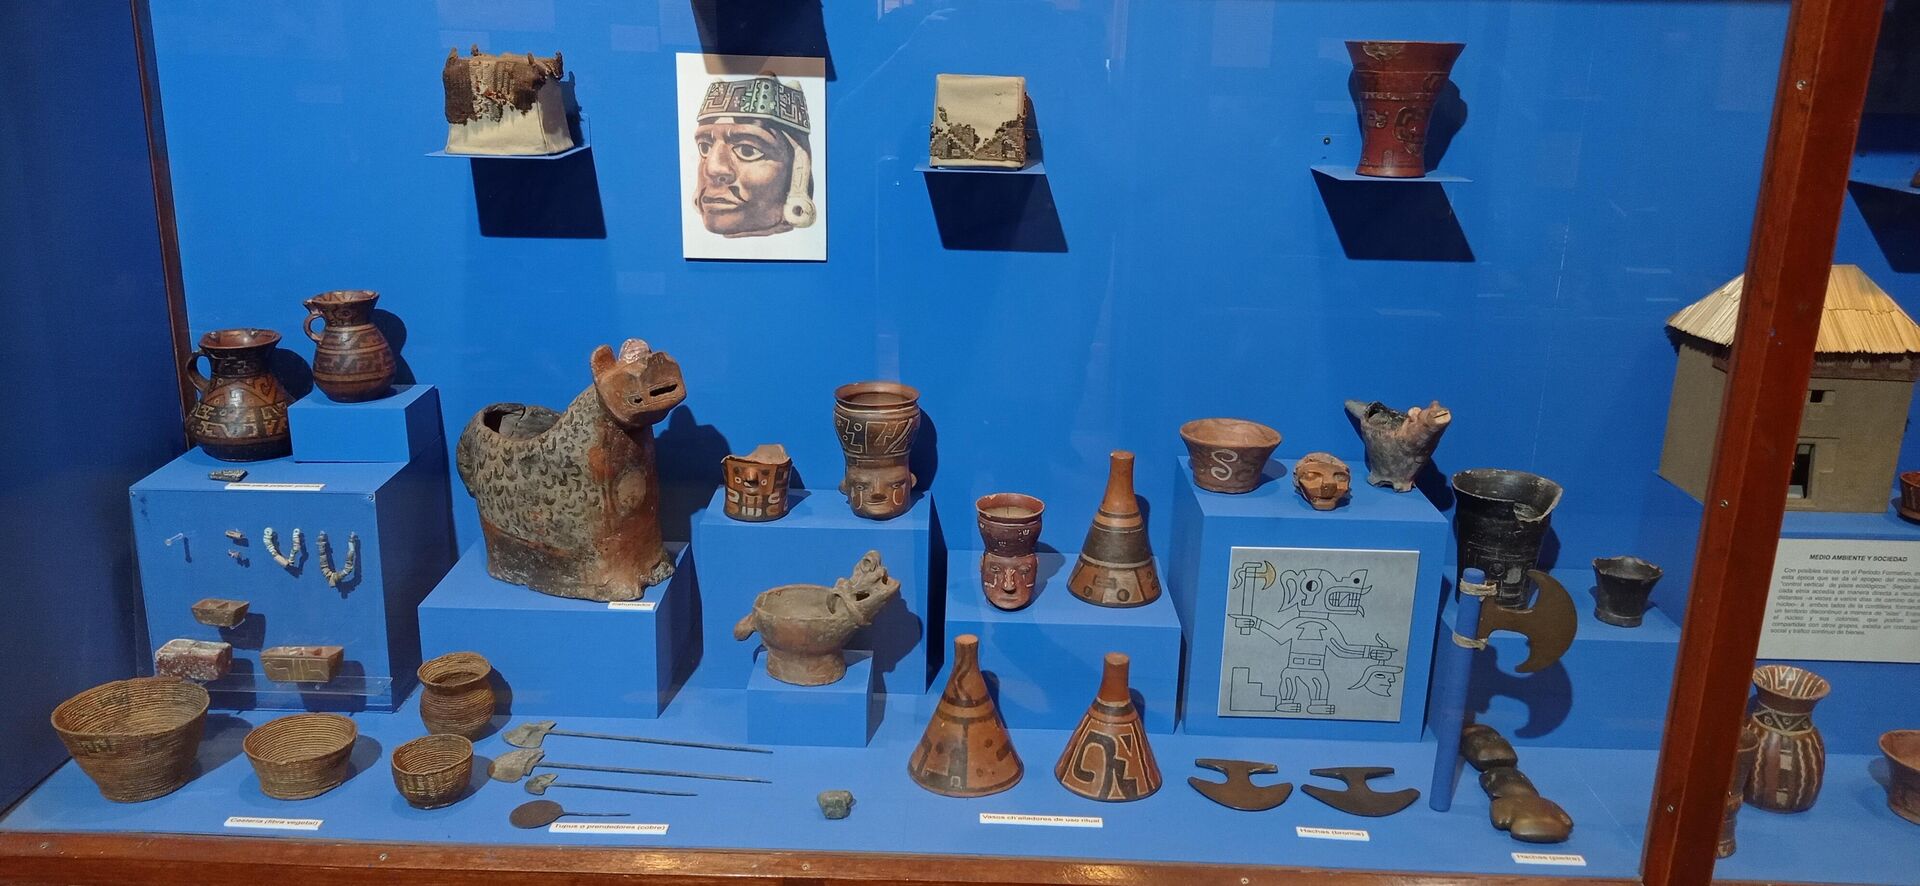 Colección del Instituto de Investigaciones Antropológicas y Museo Arqueológico (INIAM) de Cochabamba, Bolivia - Sputnik Mundo, 1920, 06.11.2021